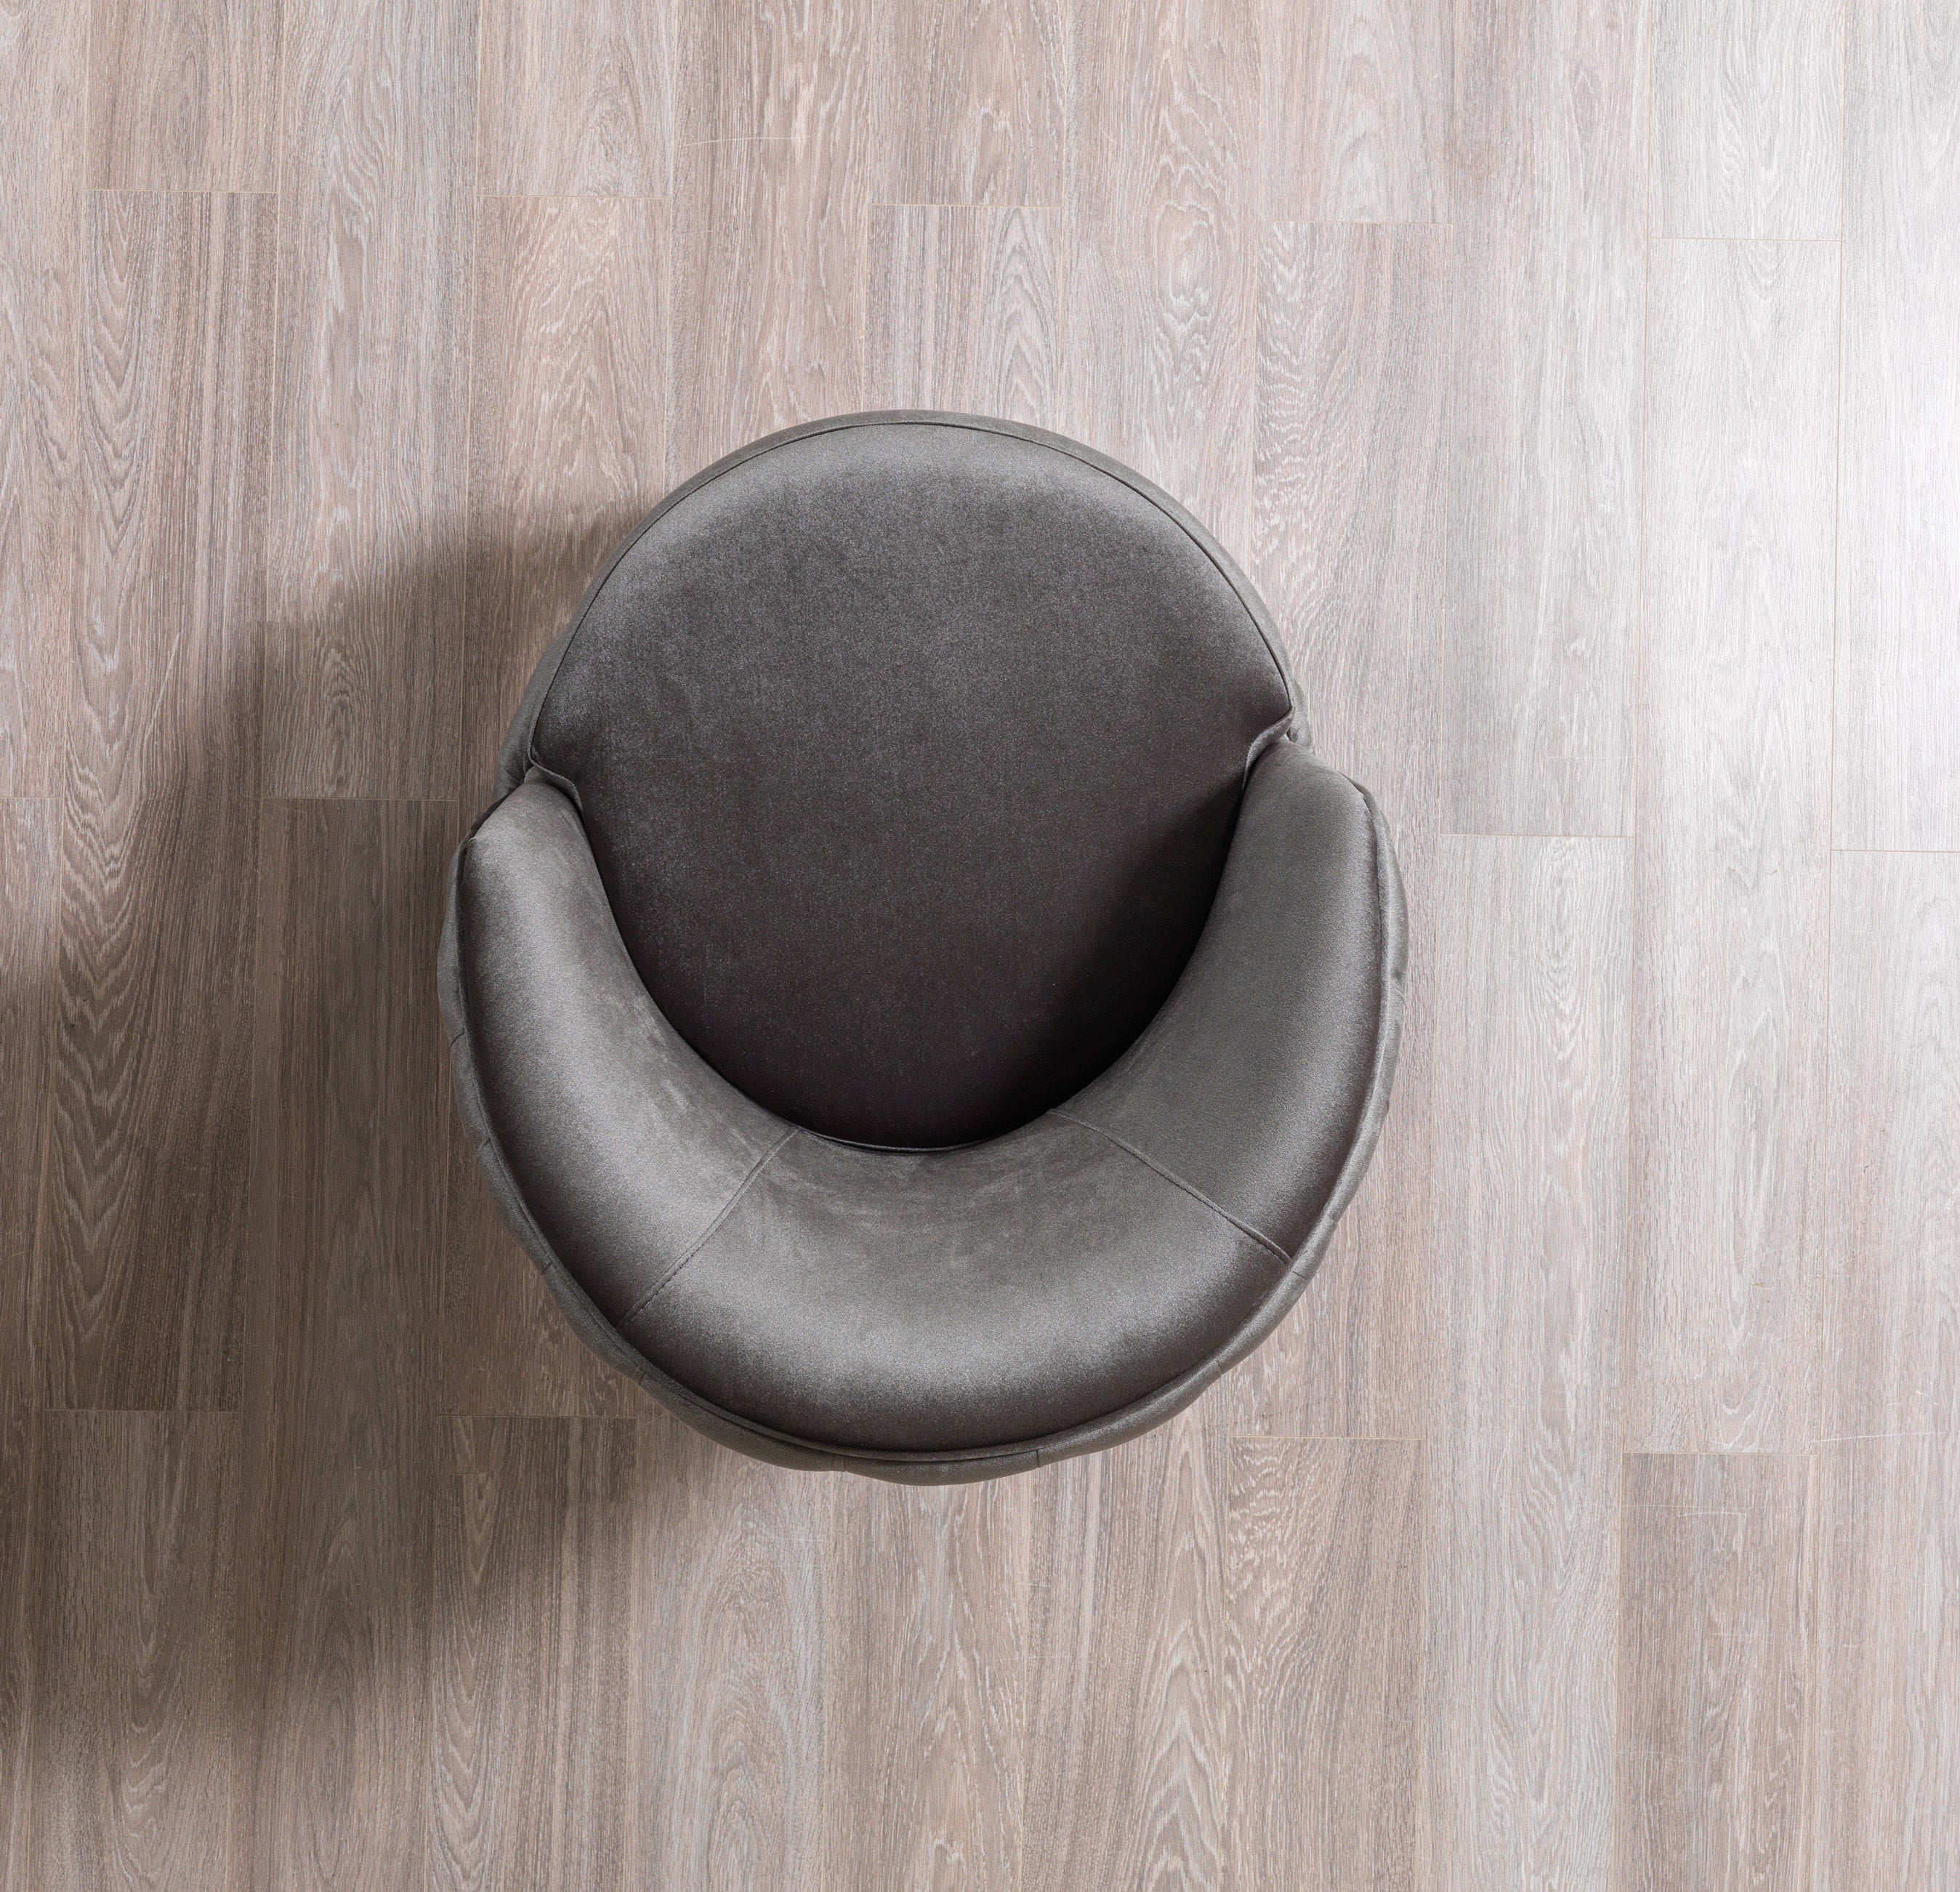 Lupino Gray Velvet Chair - LUPINOGRAY-CHAIR